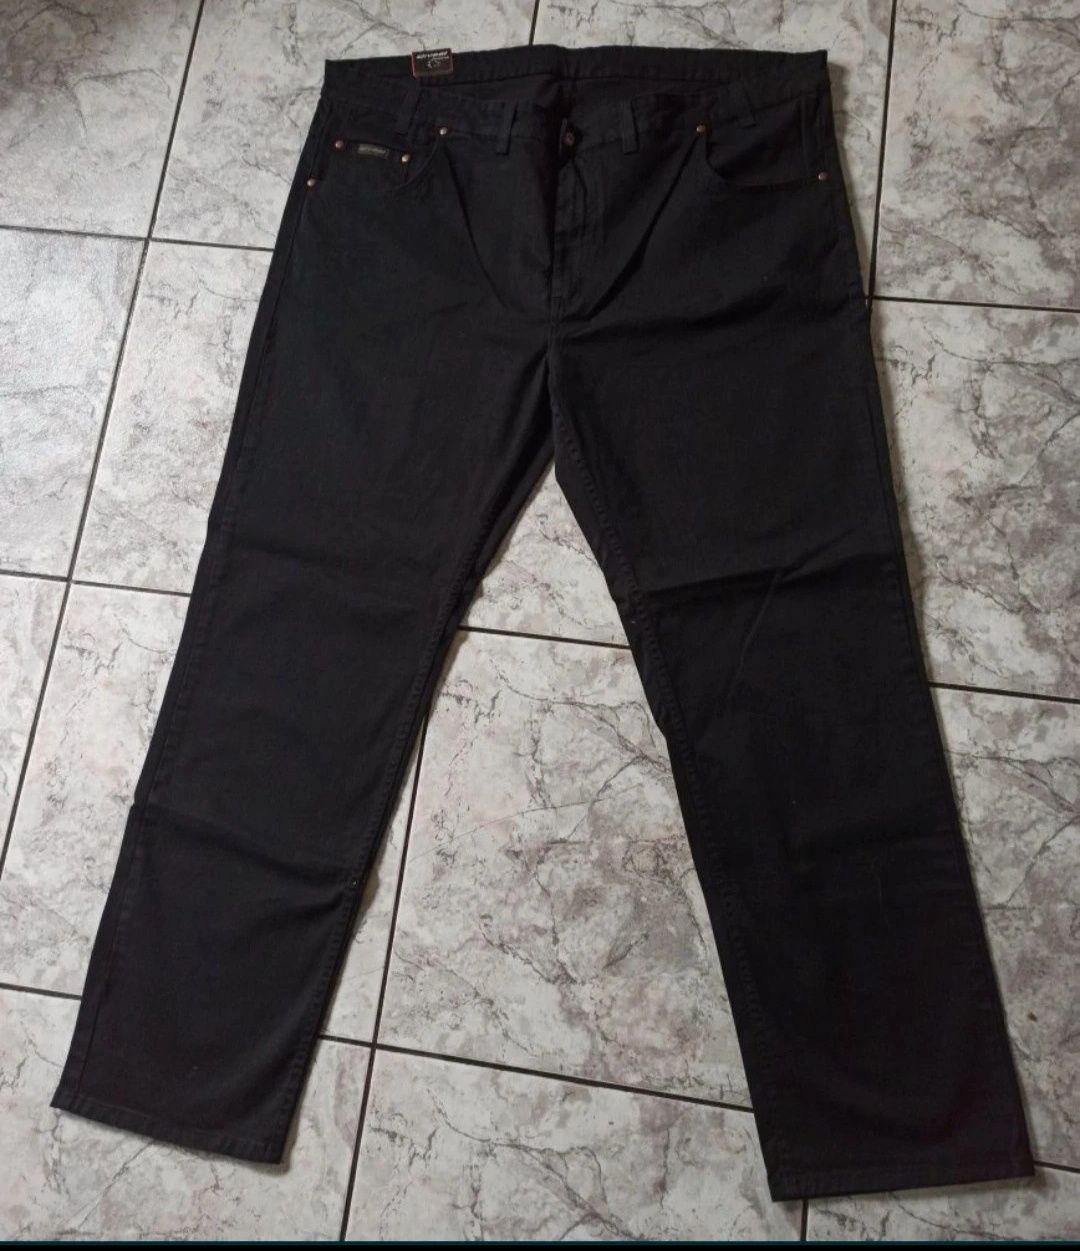 Jeansy męskie czarne XXXL - 116 cm. Divest jeans.